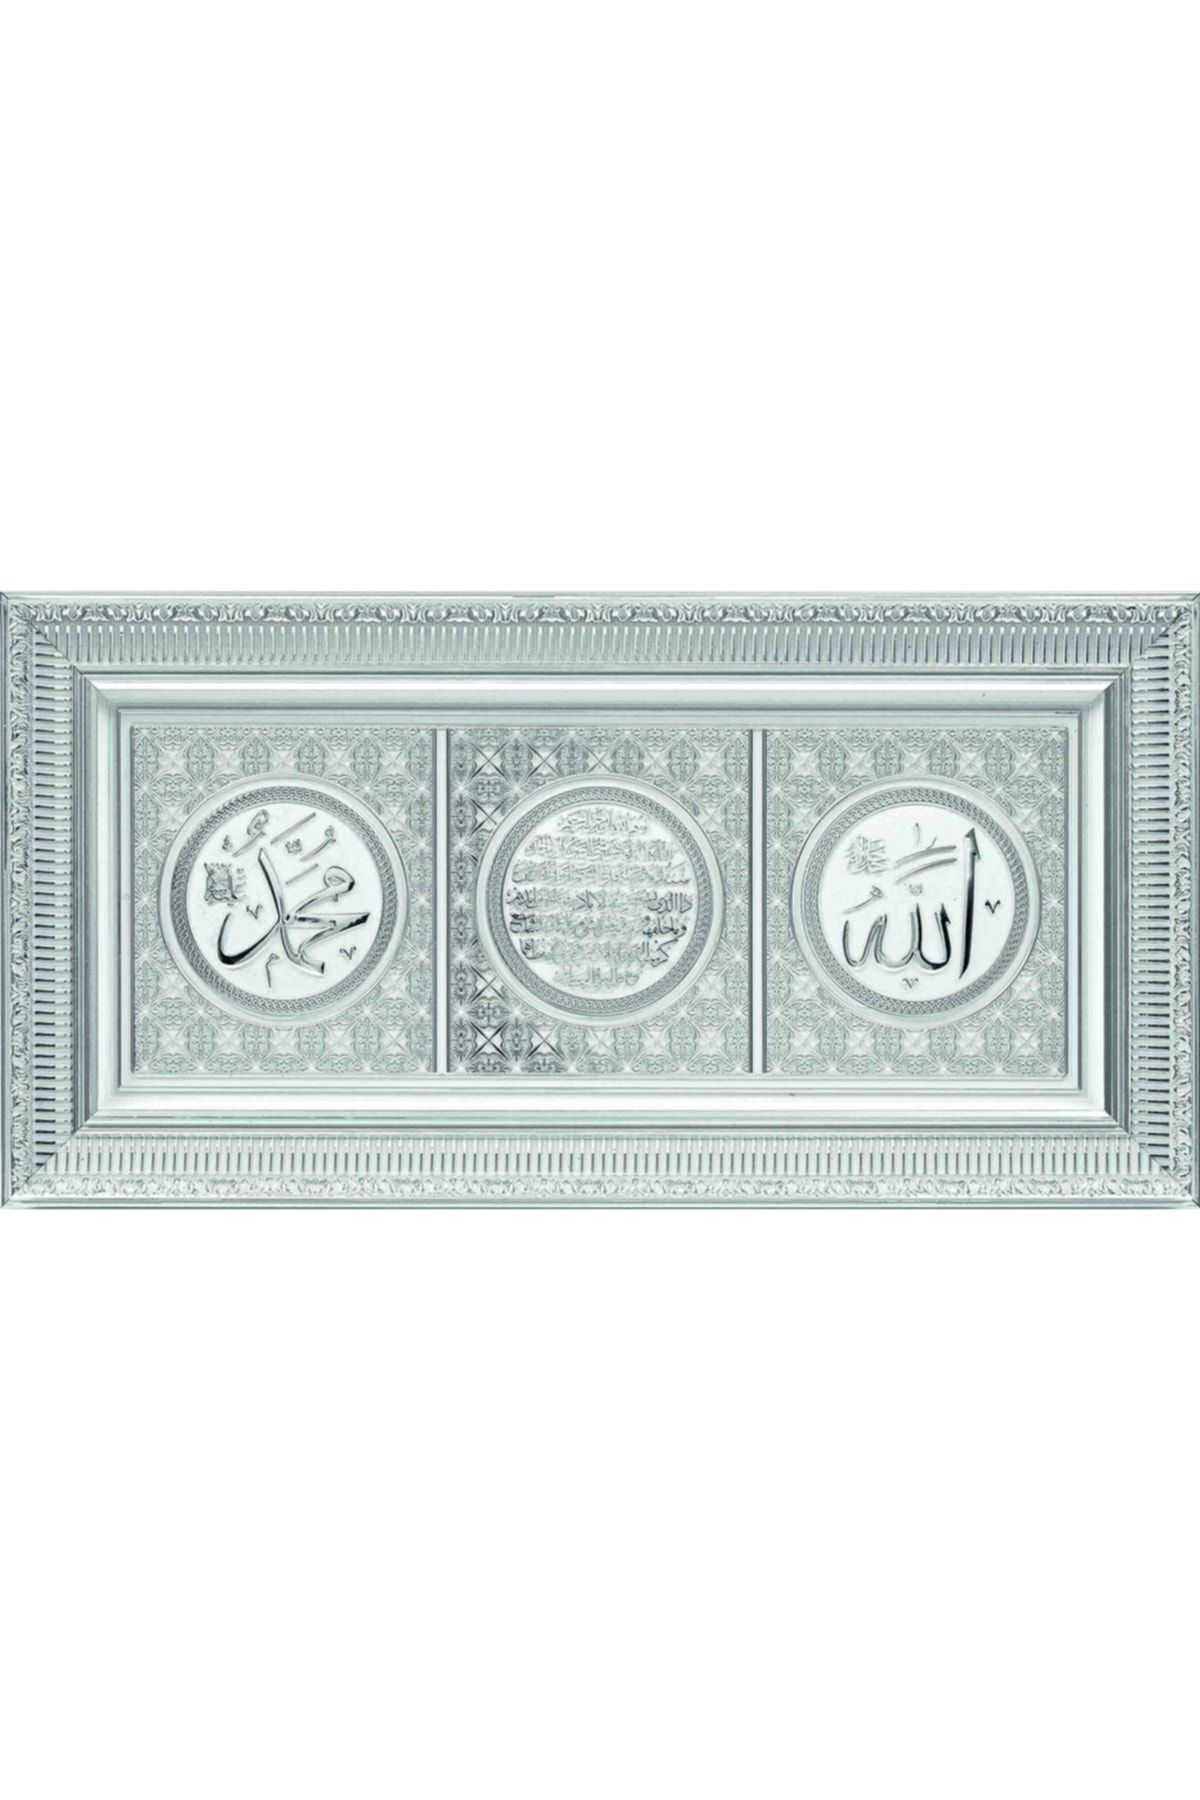 GÜNEŞ HEDİYELİK Ismi Celil Ismi Nebi Ayet-el Kürsi Beyaz Çerçeve Tablo 30x60cm